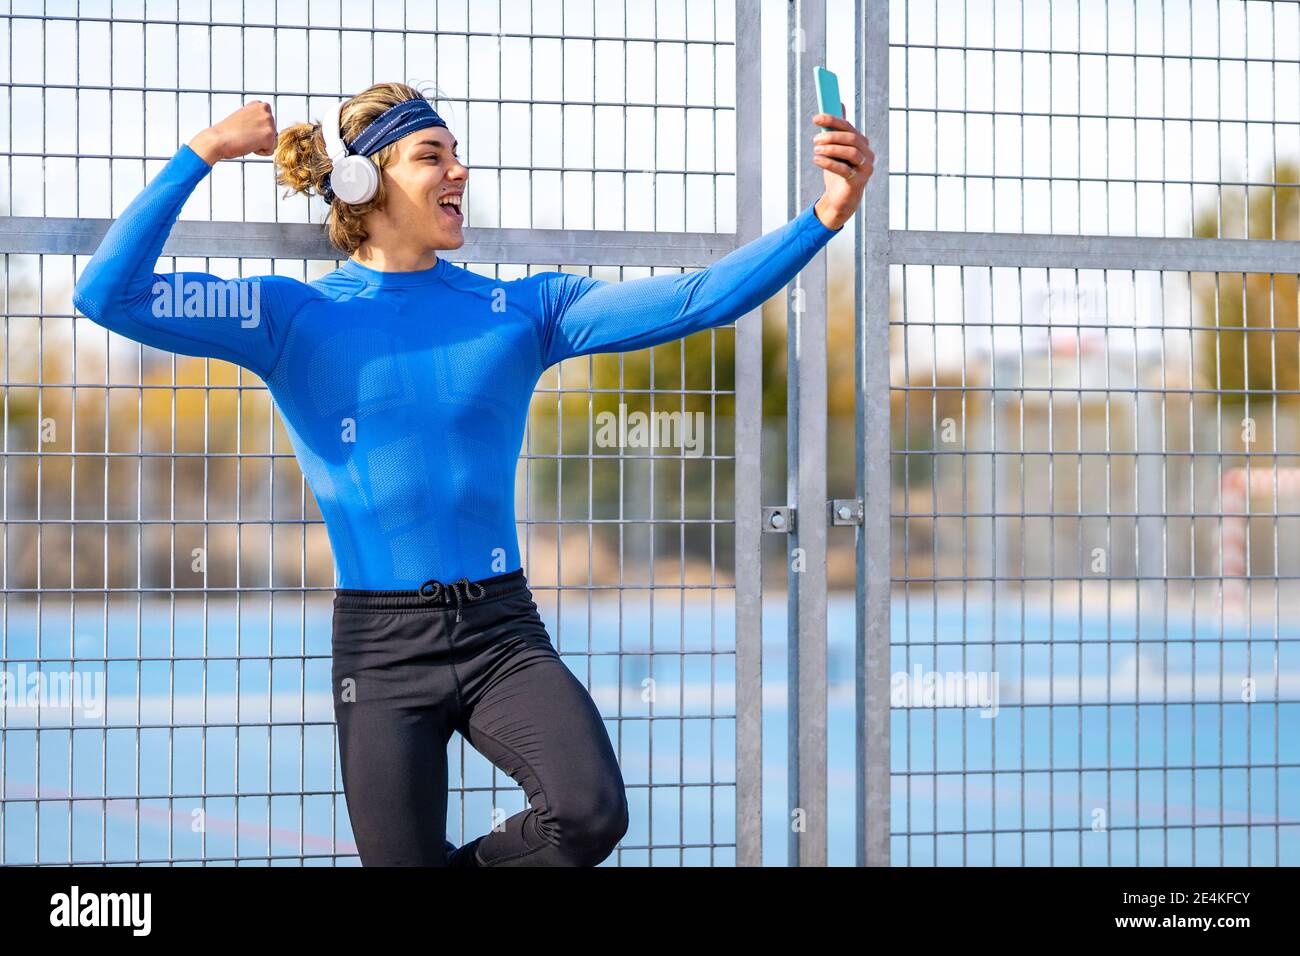 Männlicher Athlet mit offenem Mund macht Selfie, indem er Bizep zeigt Gegen Zaun am sonnigen Tag Stockfoto